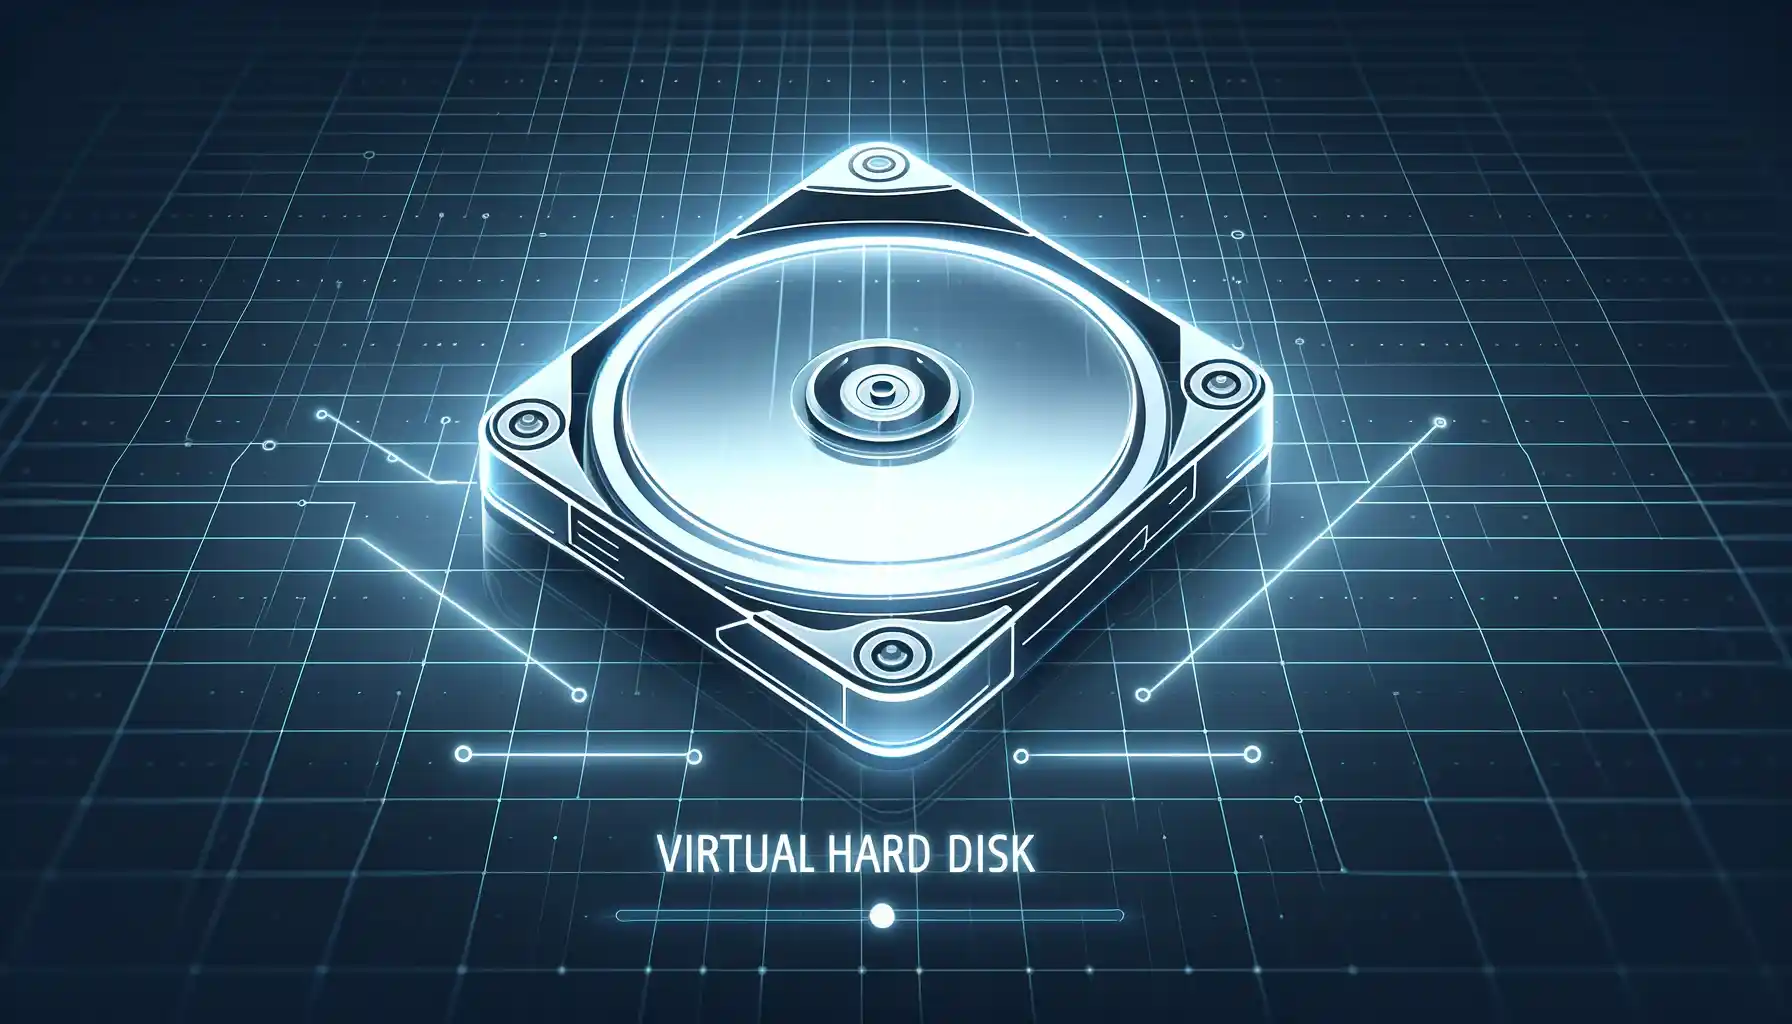 بررسی کامل تکنولوژی VHD (Virtual Hard Disk)